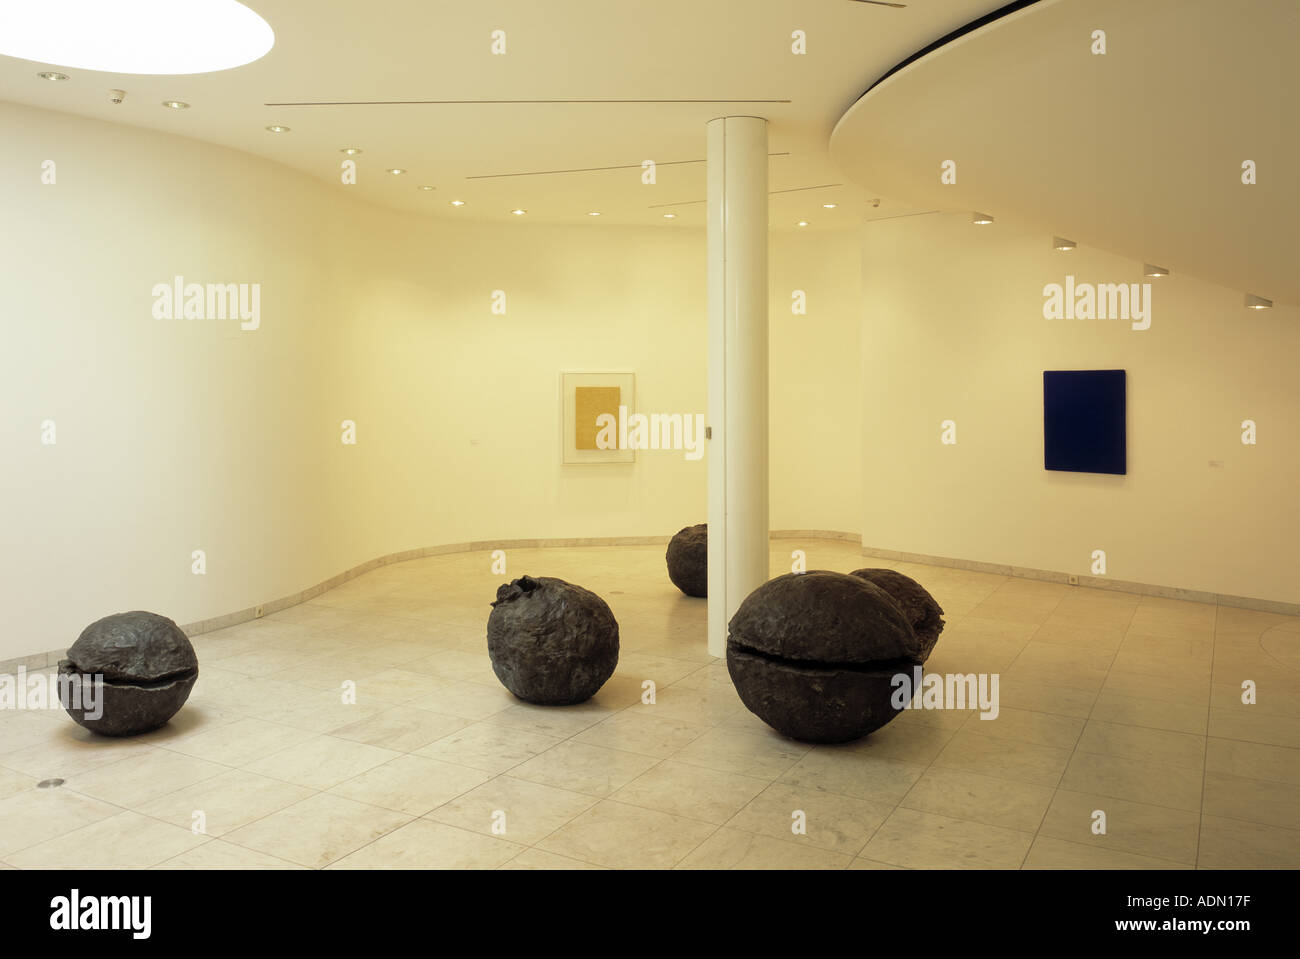 Mönchengladbach, Museo Abteiberg, Raum mit Werken von Fontana und Yves Klein Foto Stock